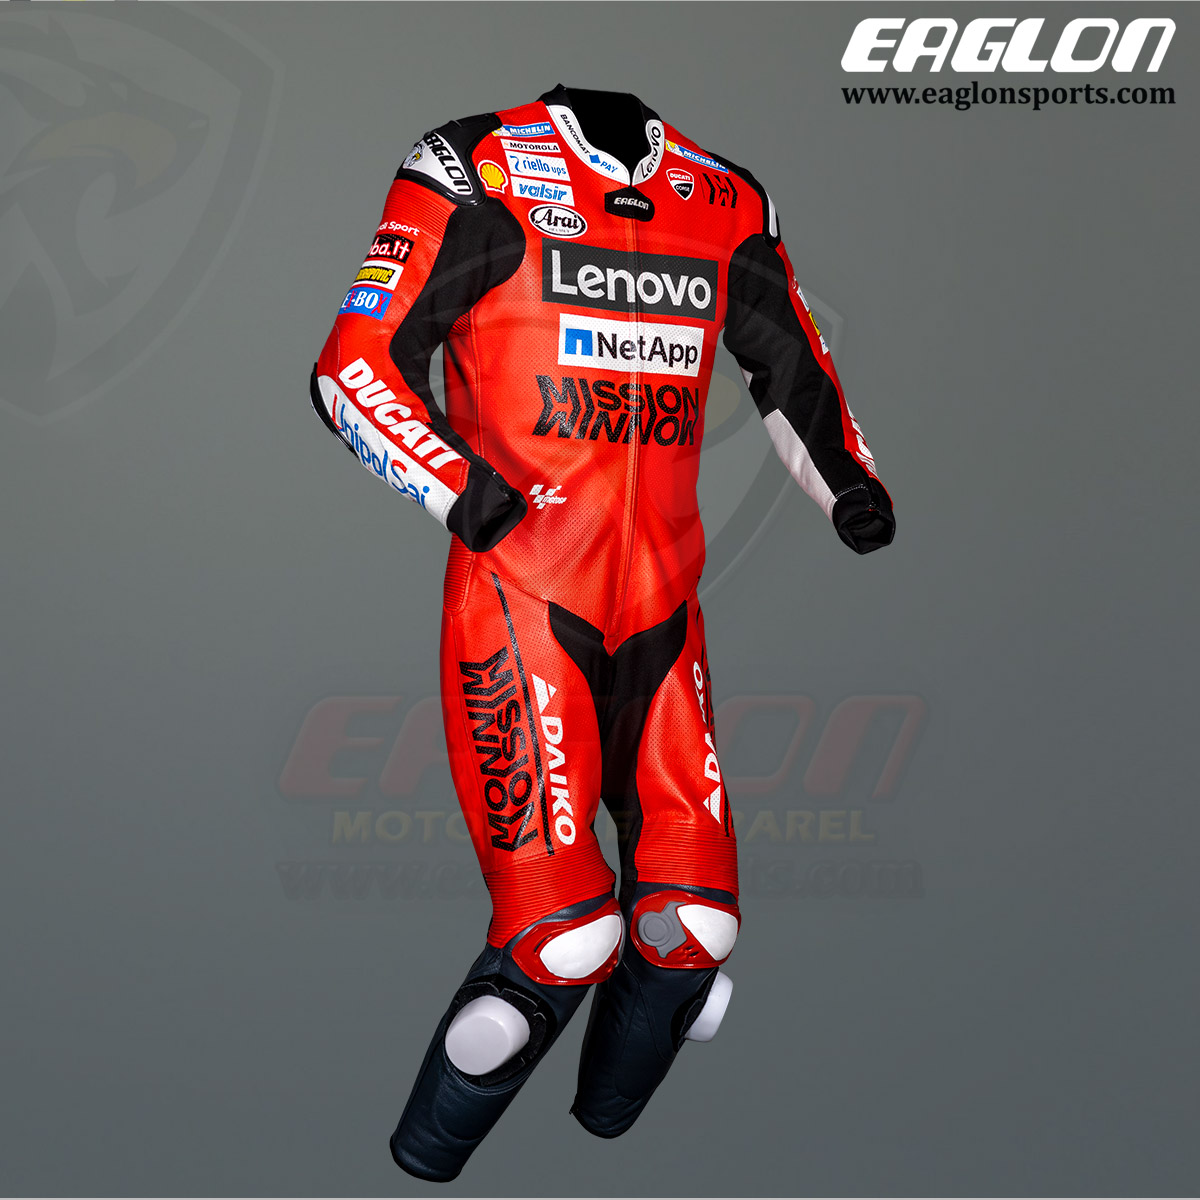 Andrea-Dovizioso-Ducati-MotoGP-2020-Leather-Race-Suit